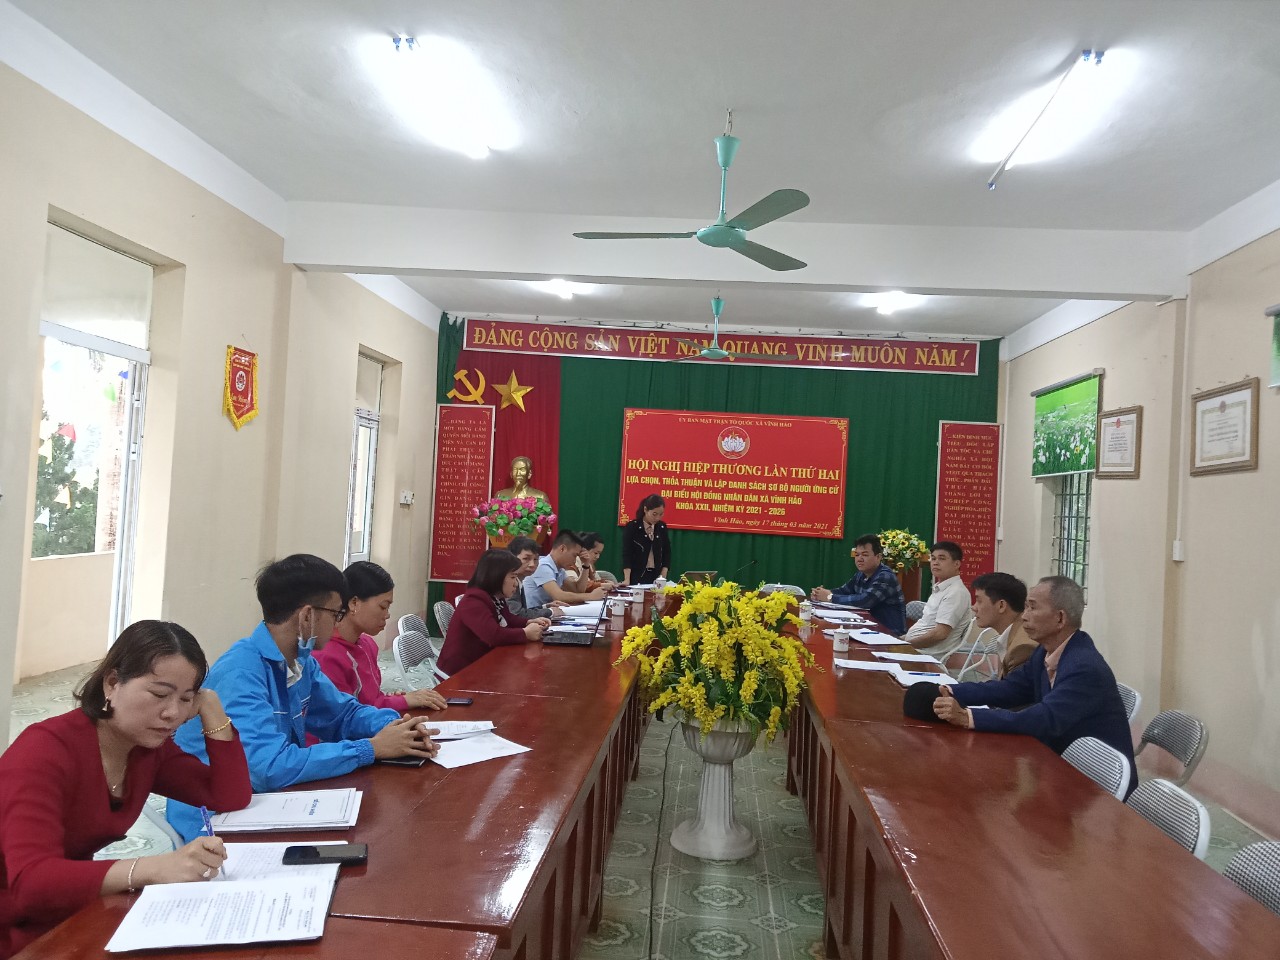 Xã Vĩnh Hảo tổ chức Hội nghị hiệp thương lần thứ hai bầu cử đại biểu HĐND xã khóa XXII, Nhiệm kỳ 2021 - 2026